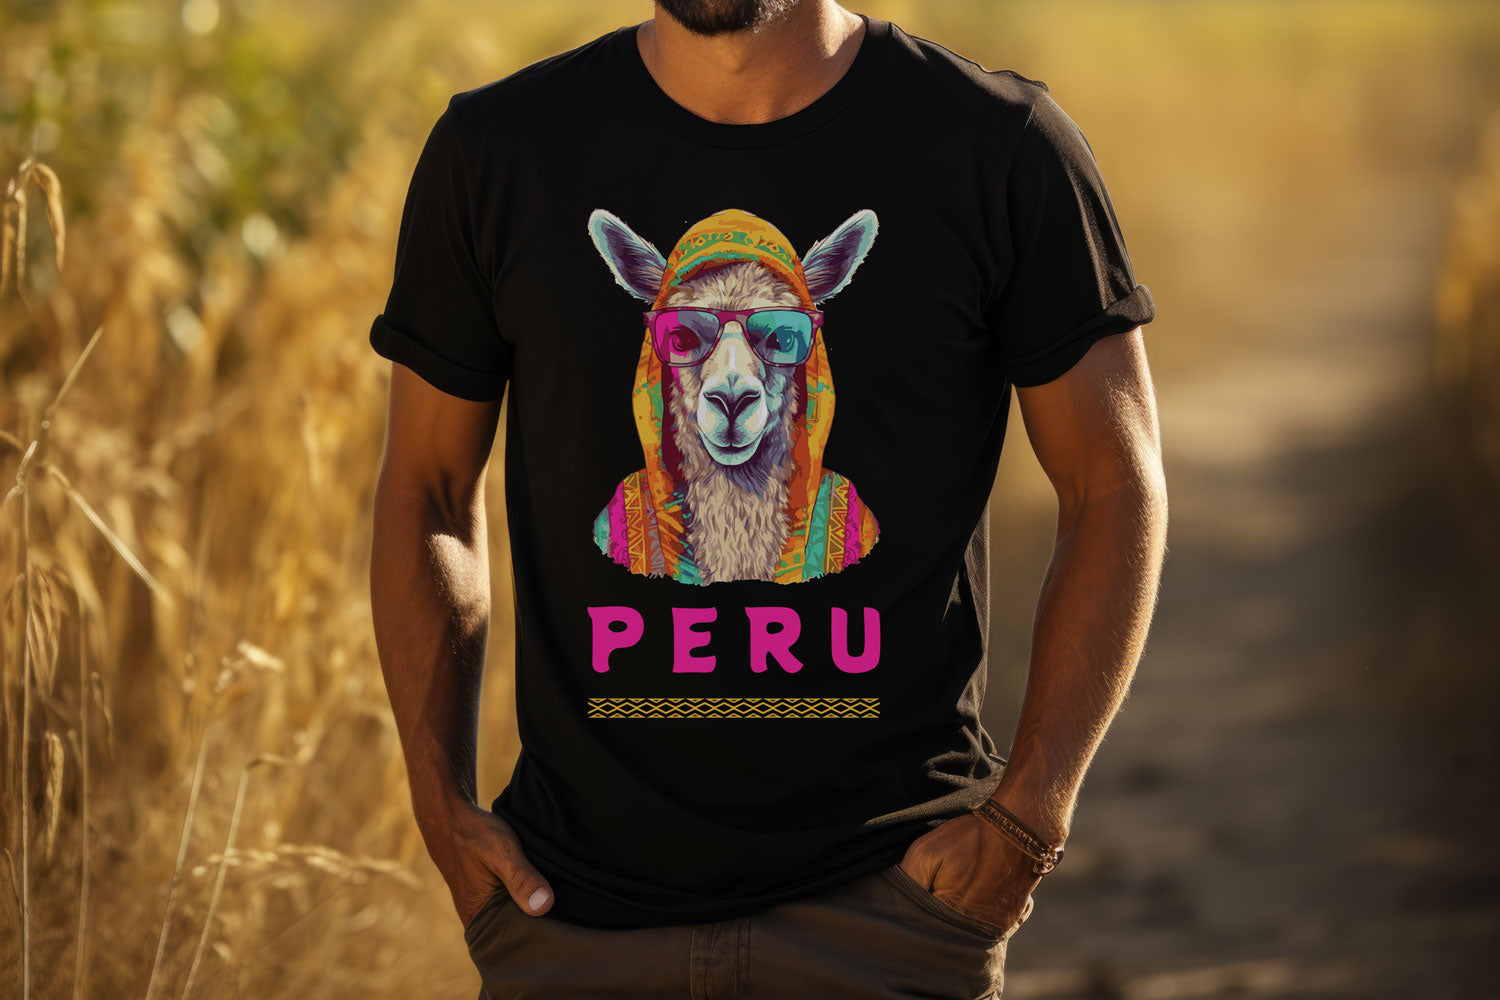 Mens Peru tshirt. graphic tee, organic cotton.